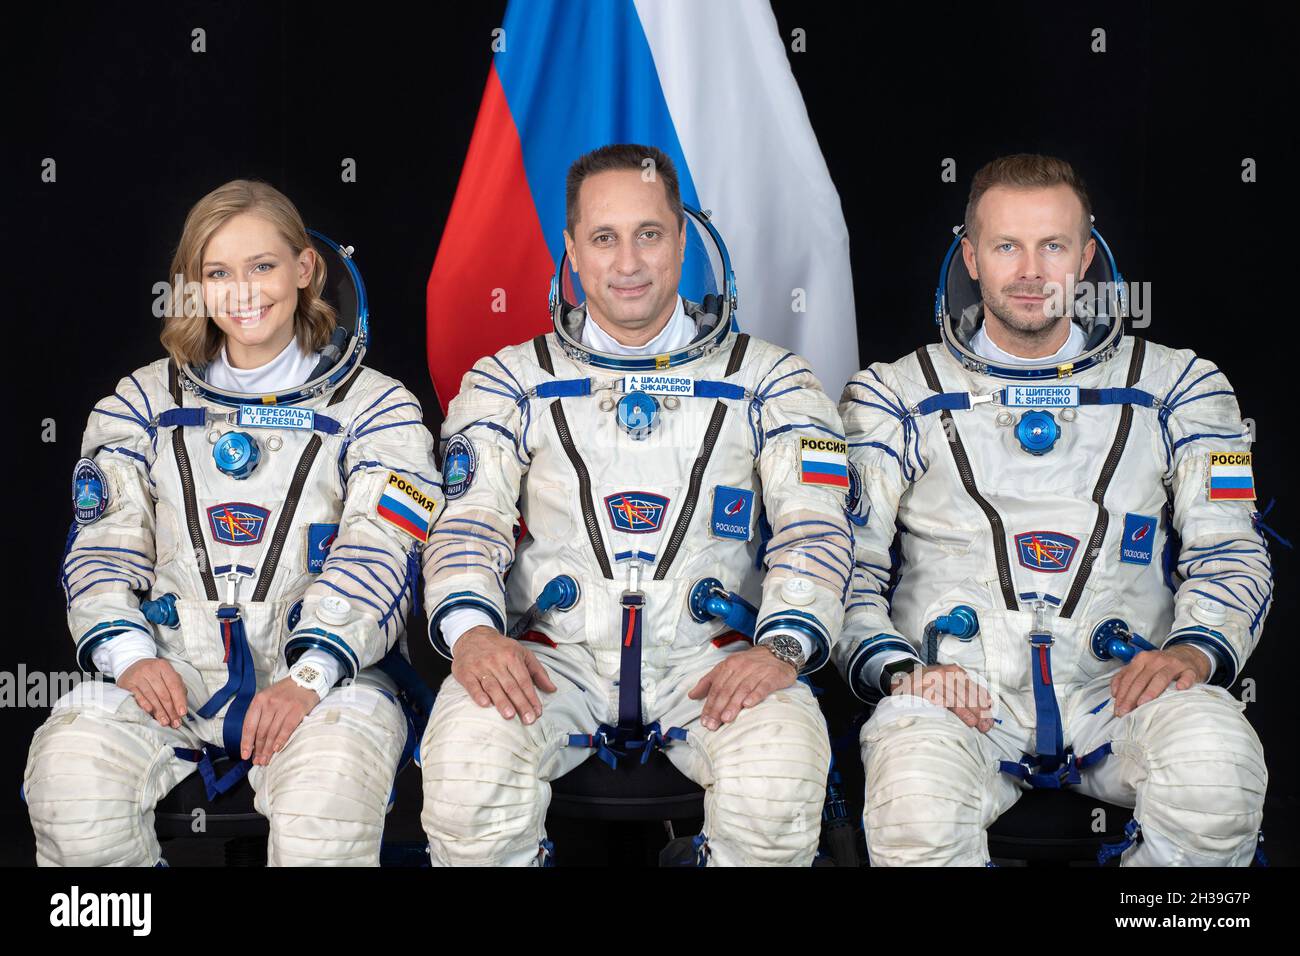 STAR CITY, RUSSIA - 26 agosto 2021 - i membri dell'equipaggio Soyuz MS-19 (da sinistra) Yulia Peresild, Anton Shkaplerov e Klim Shipenko posano per un ritratto a Th Foto Stock